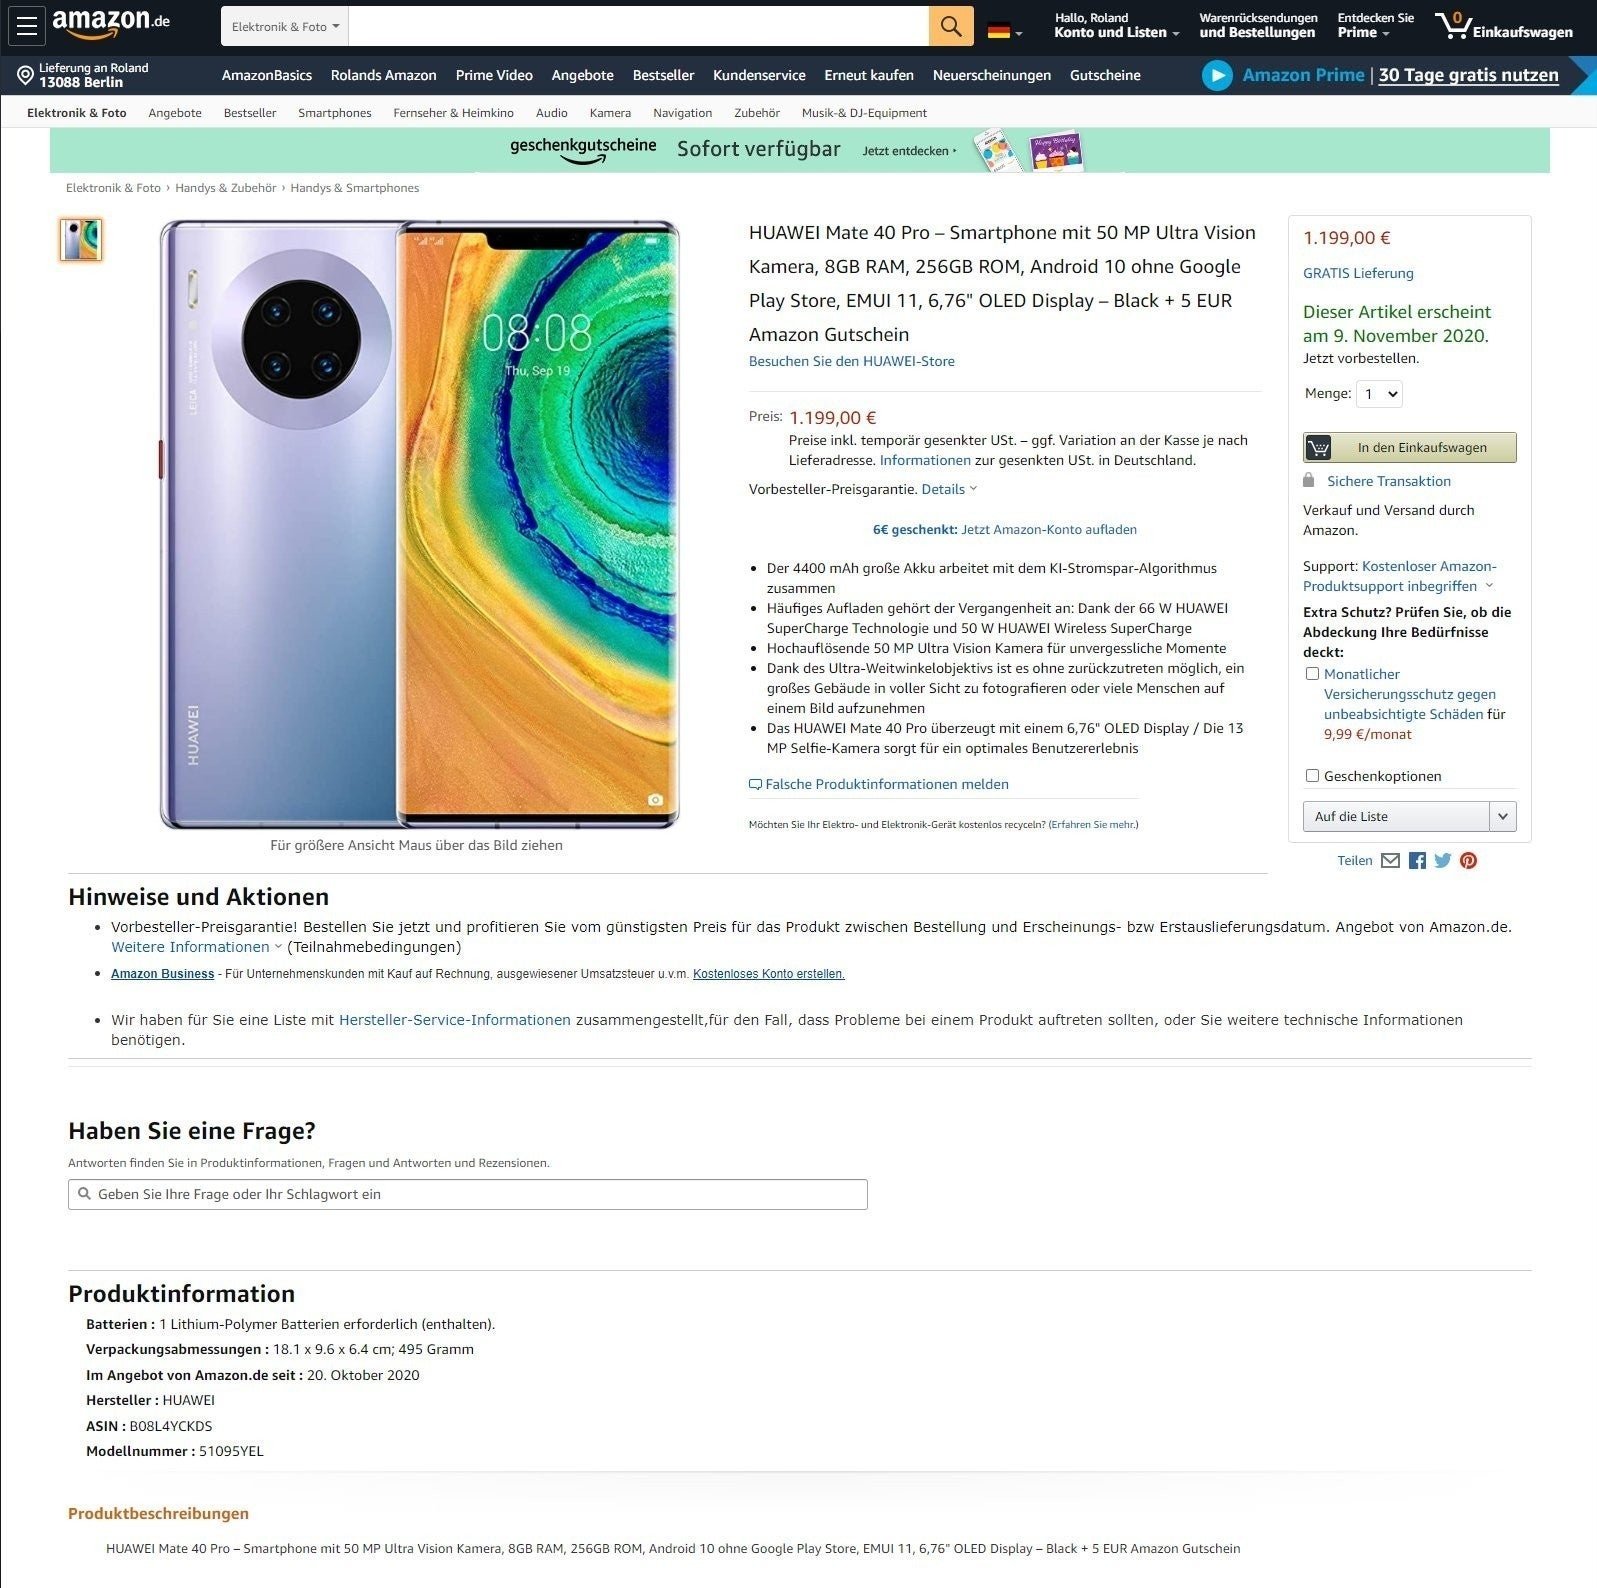 Huawei Mate 40 Pro, filtrado al completo en Amazon